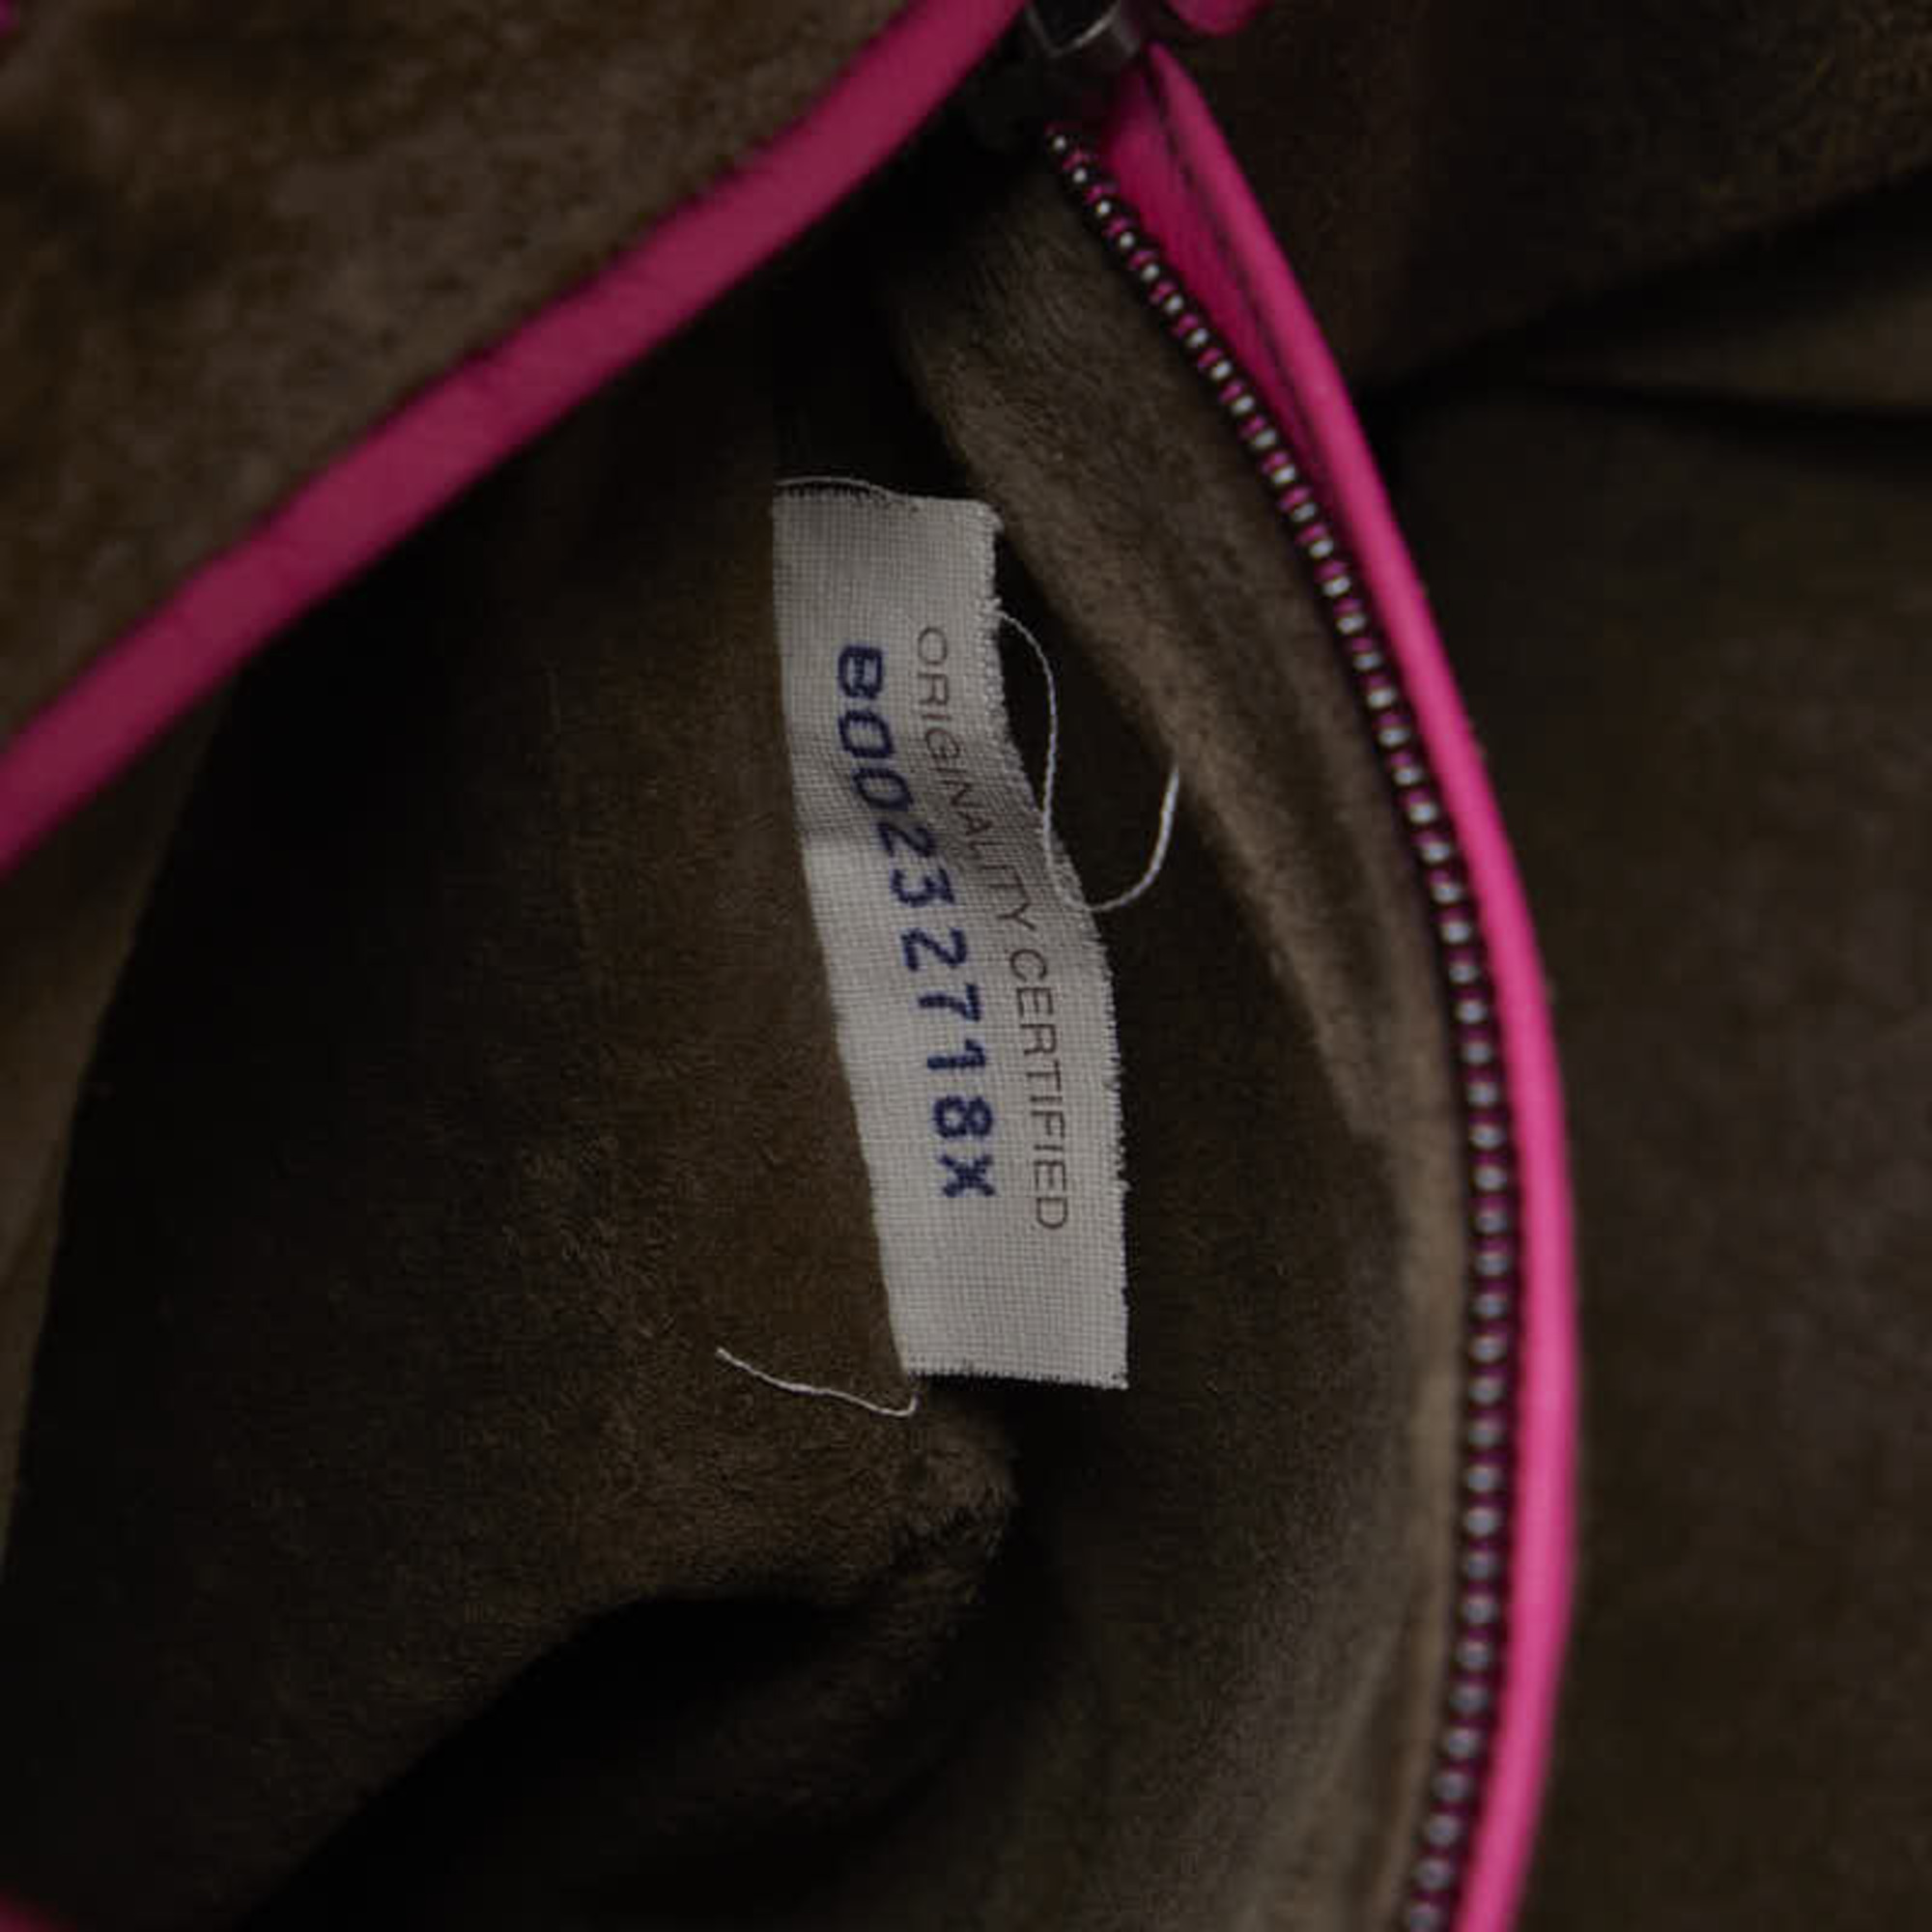 Bottega Veneta Intrecciato Handbag Tote Bag Pink Beige Leather Women's BOTTEGAVENETA